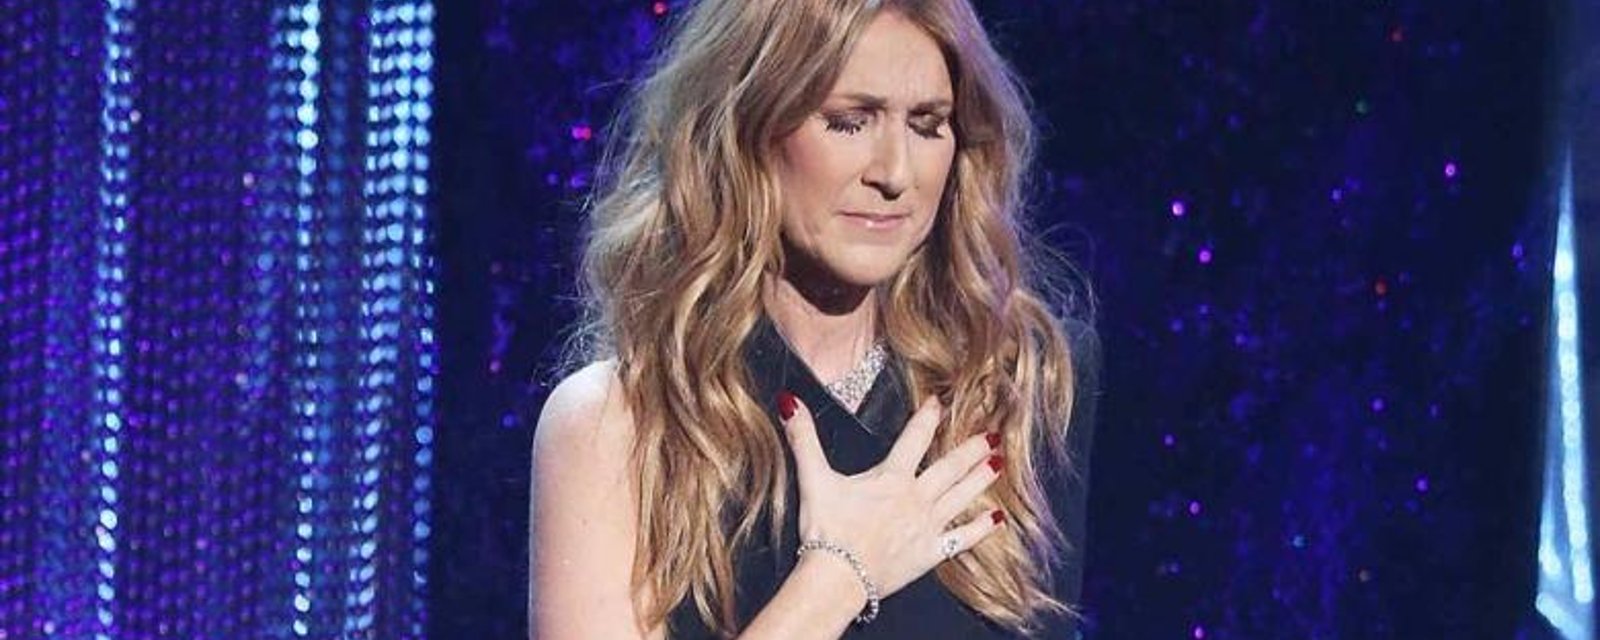 Attristée, Céline Dion rend hommage au fils décédé d'un célèbre chanteur...